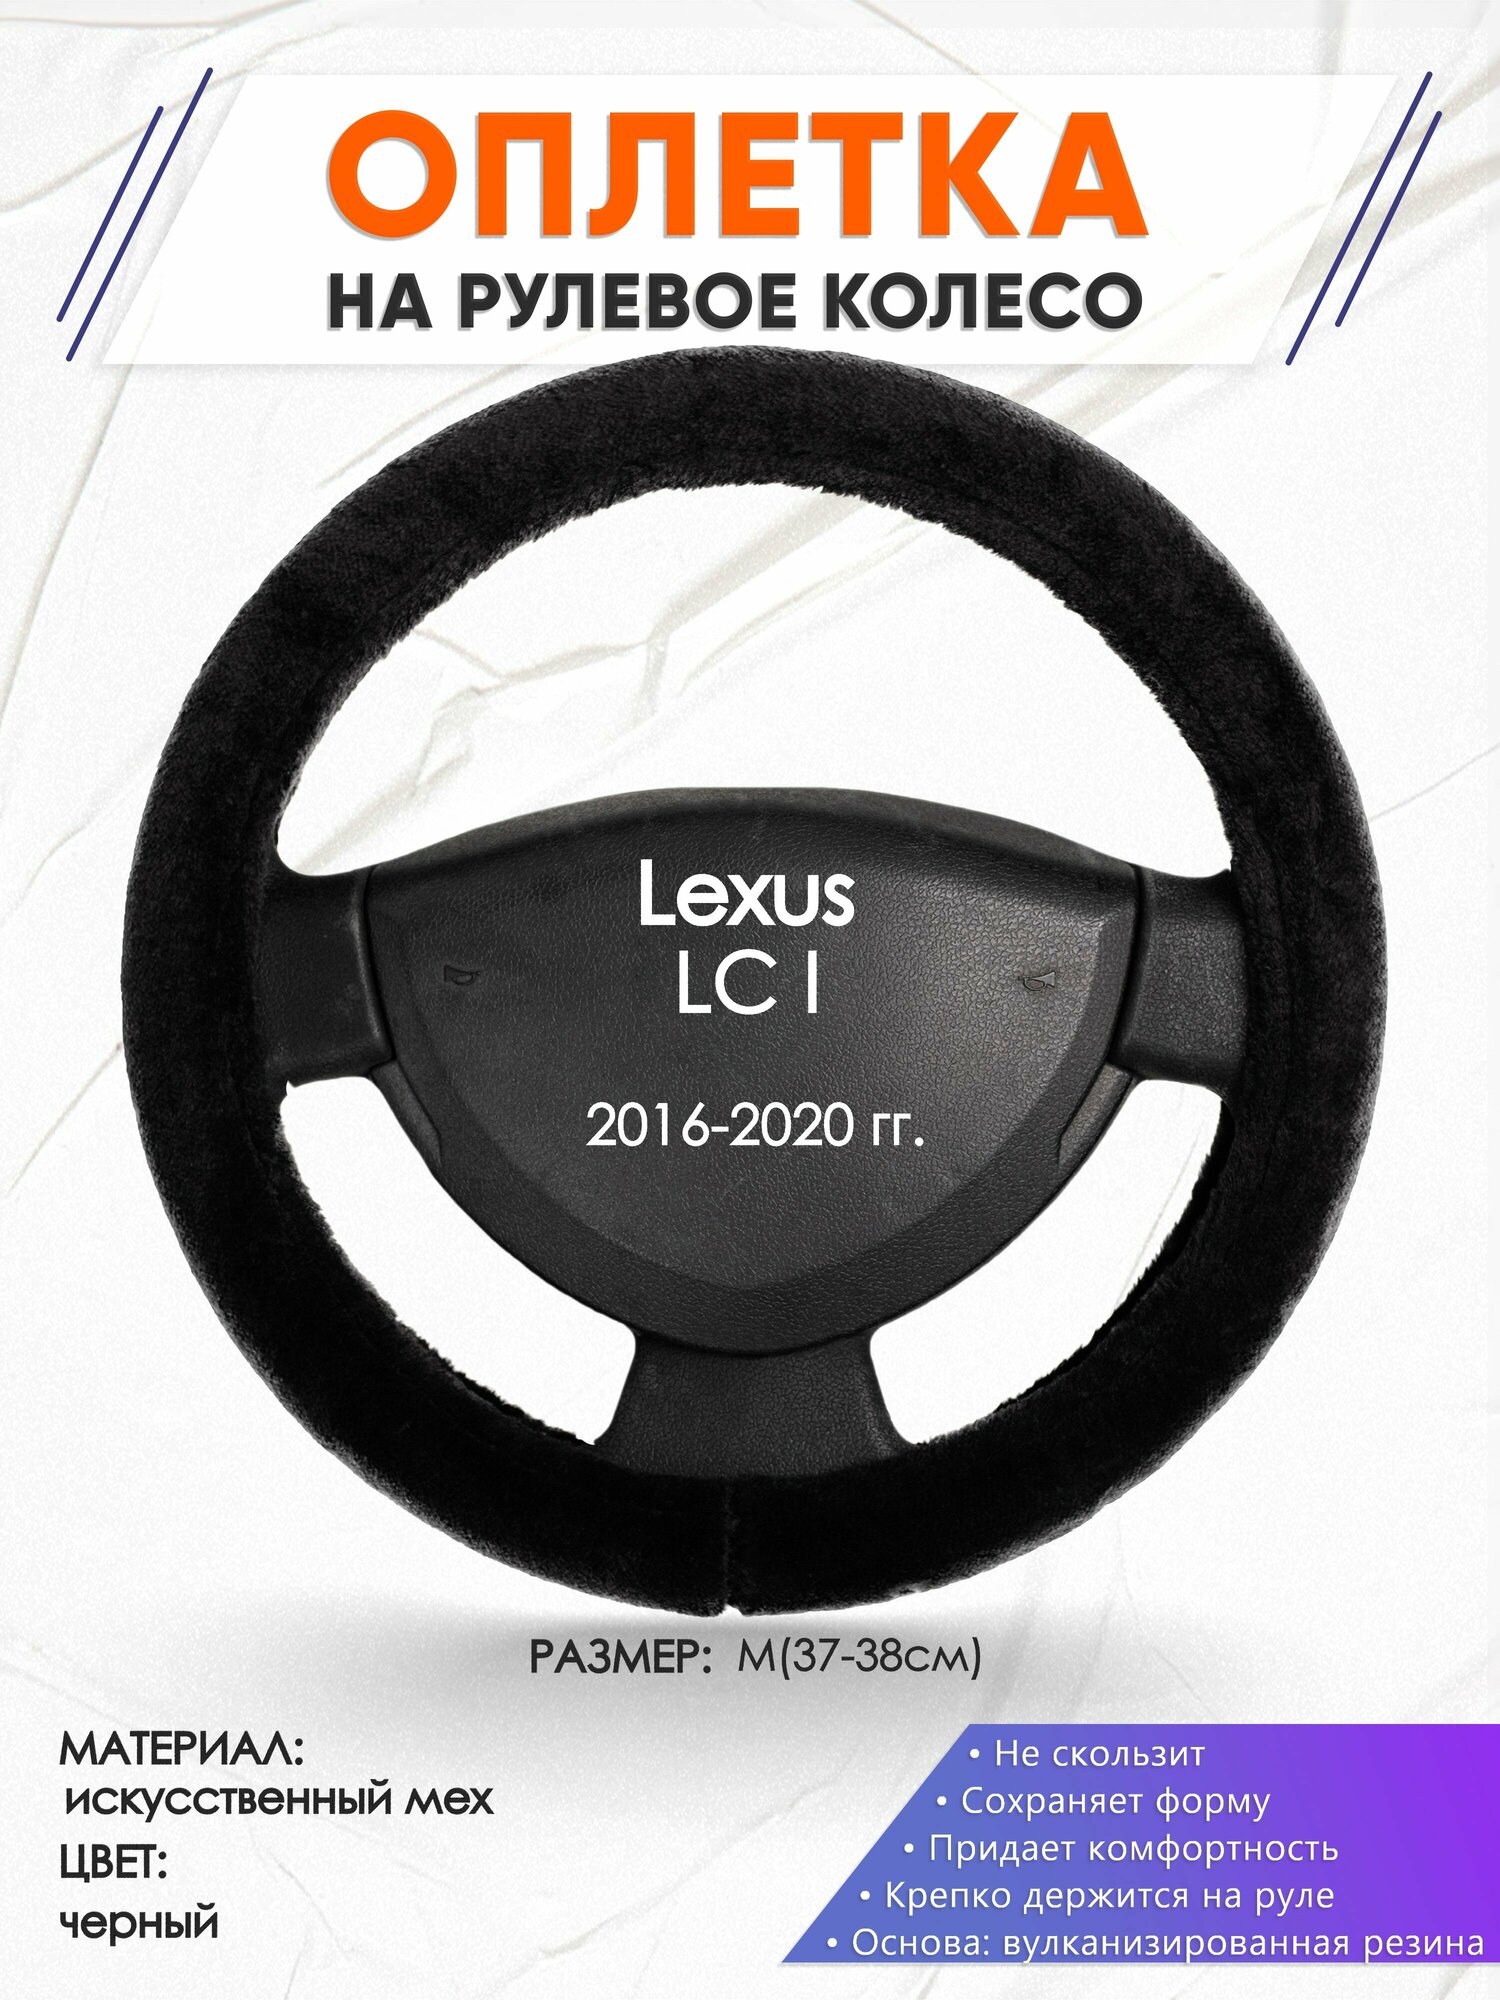 Оплетка наруль для Lexus LC I(Лексус ЛЦ 1) 2016-2020 годов выпуска, размер M(37-38см), Искусственный мех 45